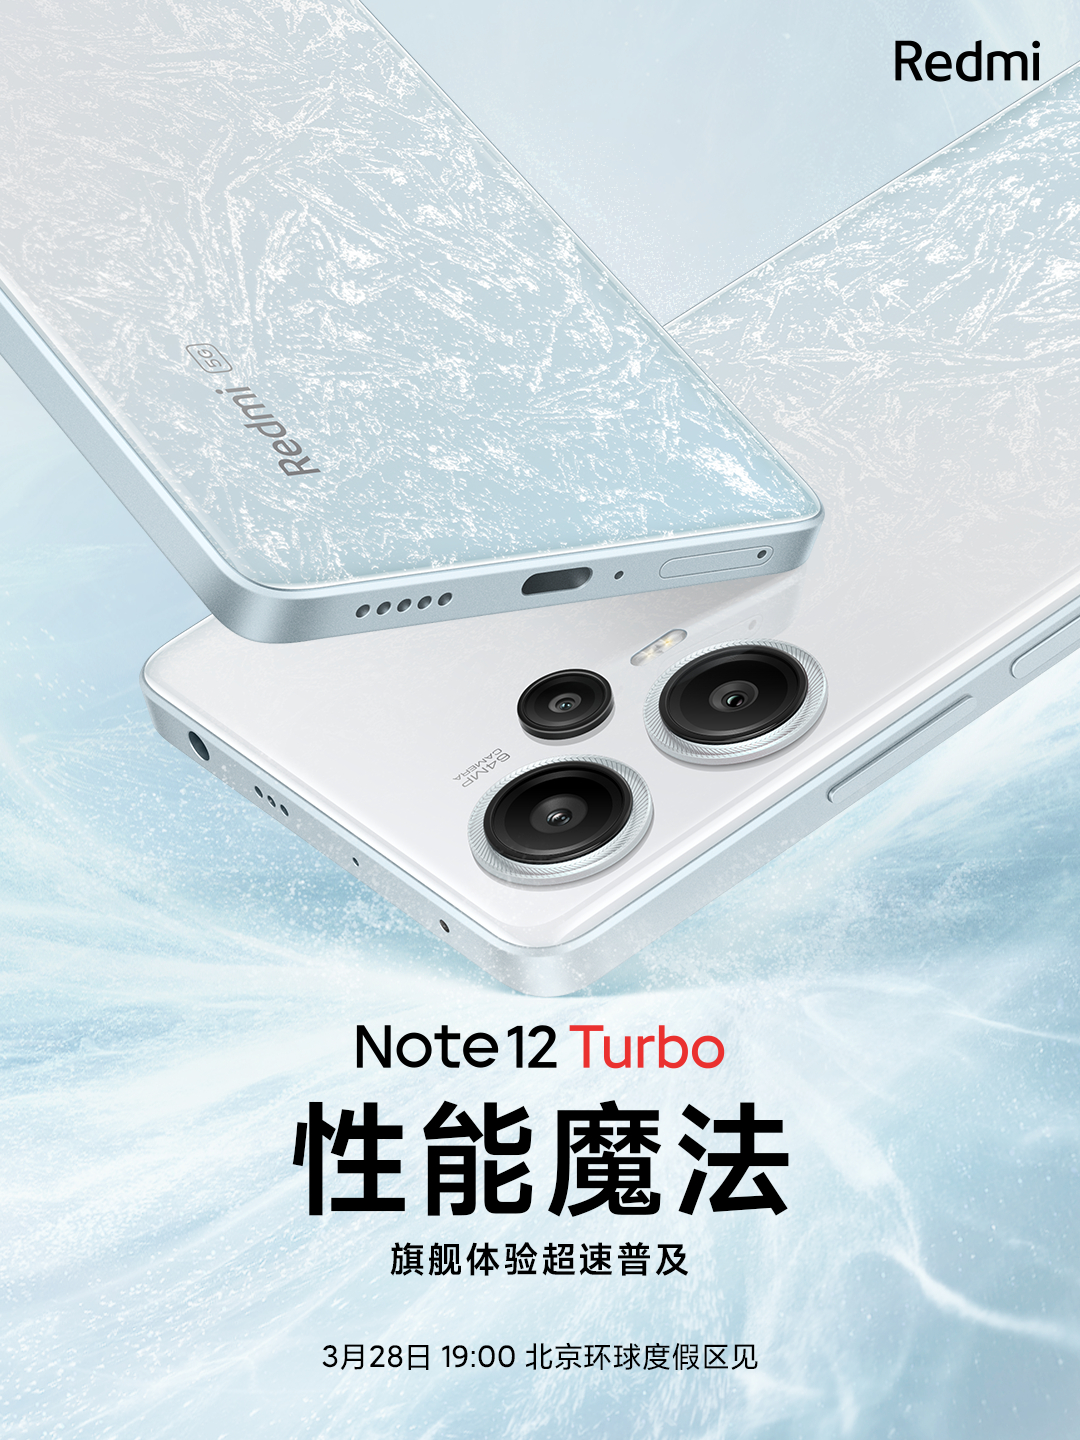 首发第二代骁龙7+，Redmi Note12 Turbo定档3月28日